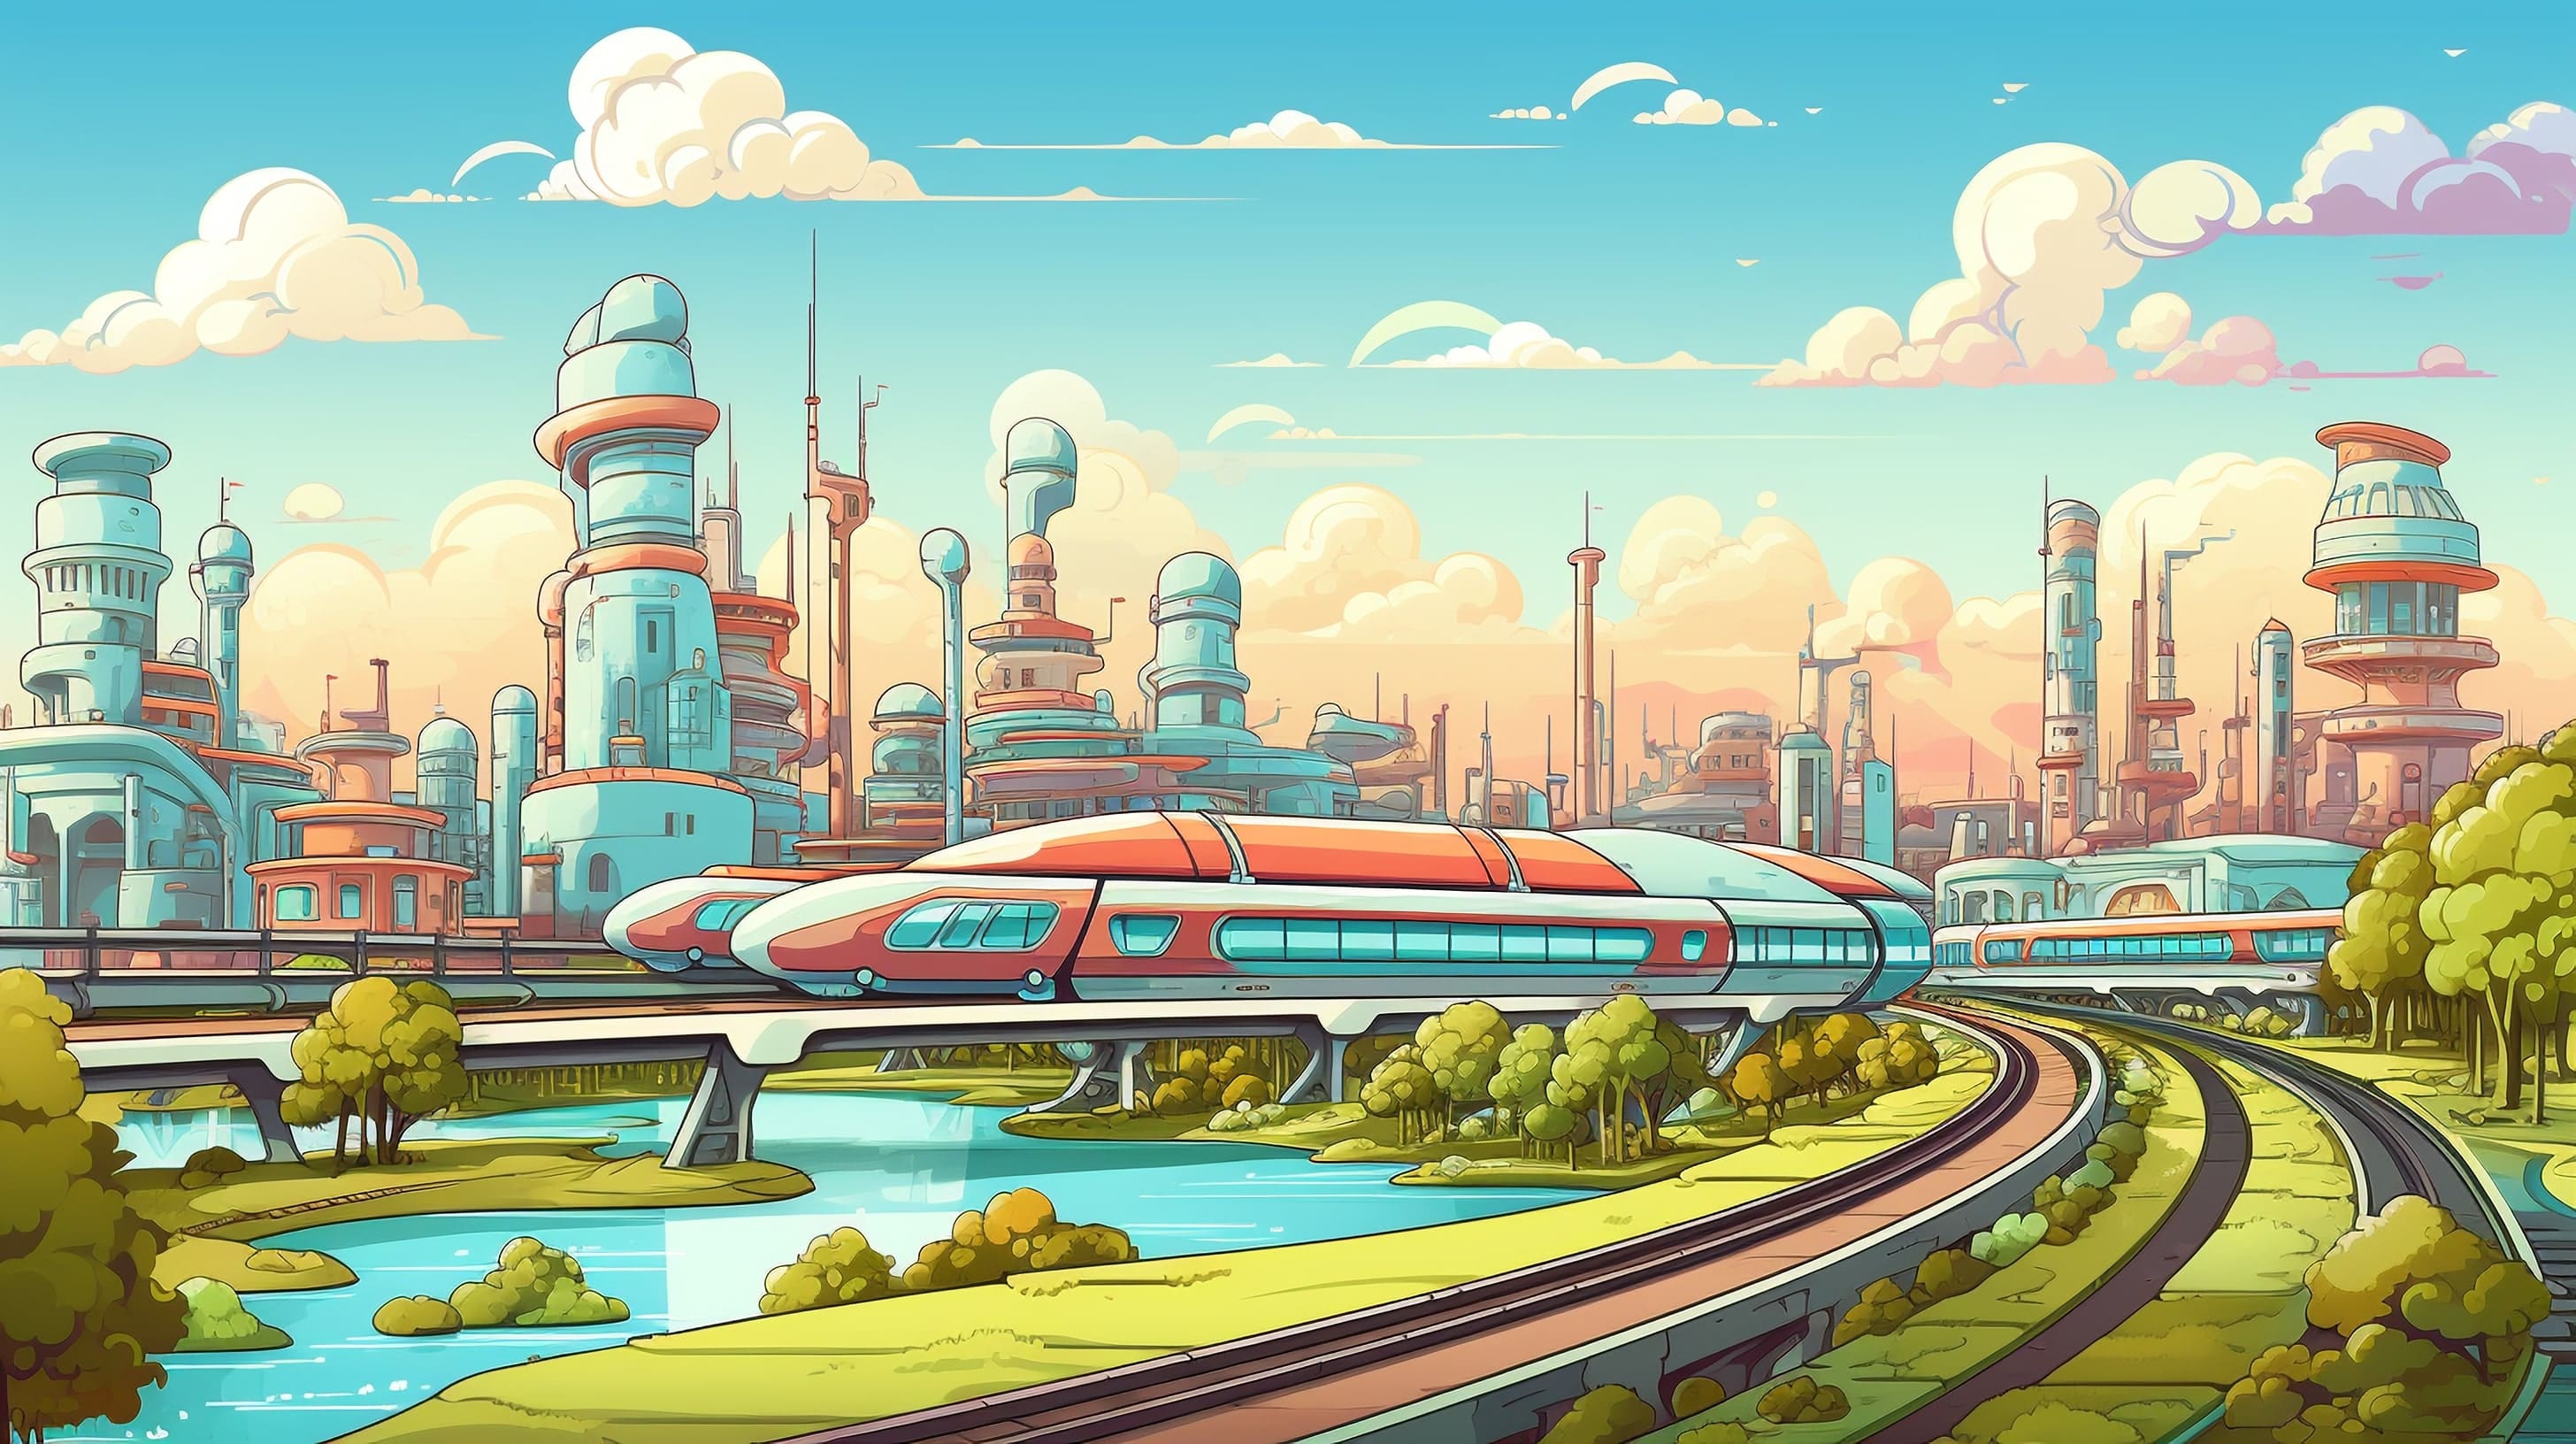 Скоростной поезд на фоне индустриального города будущего 